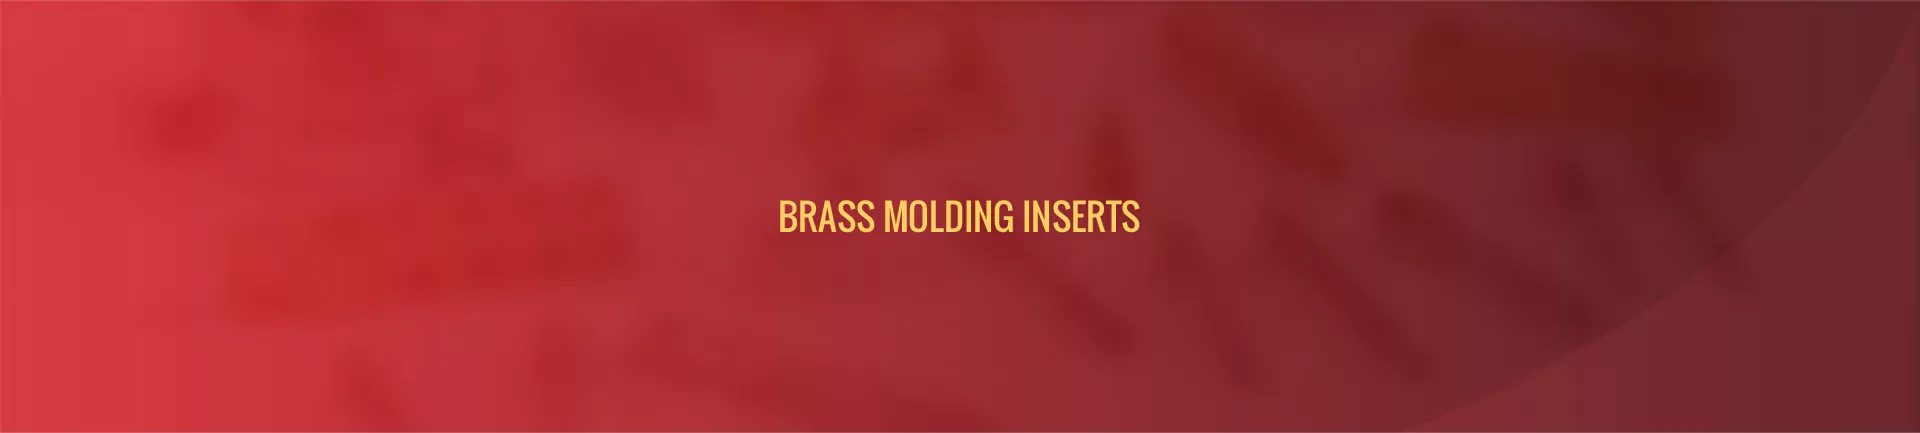 moulding-insert-banner